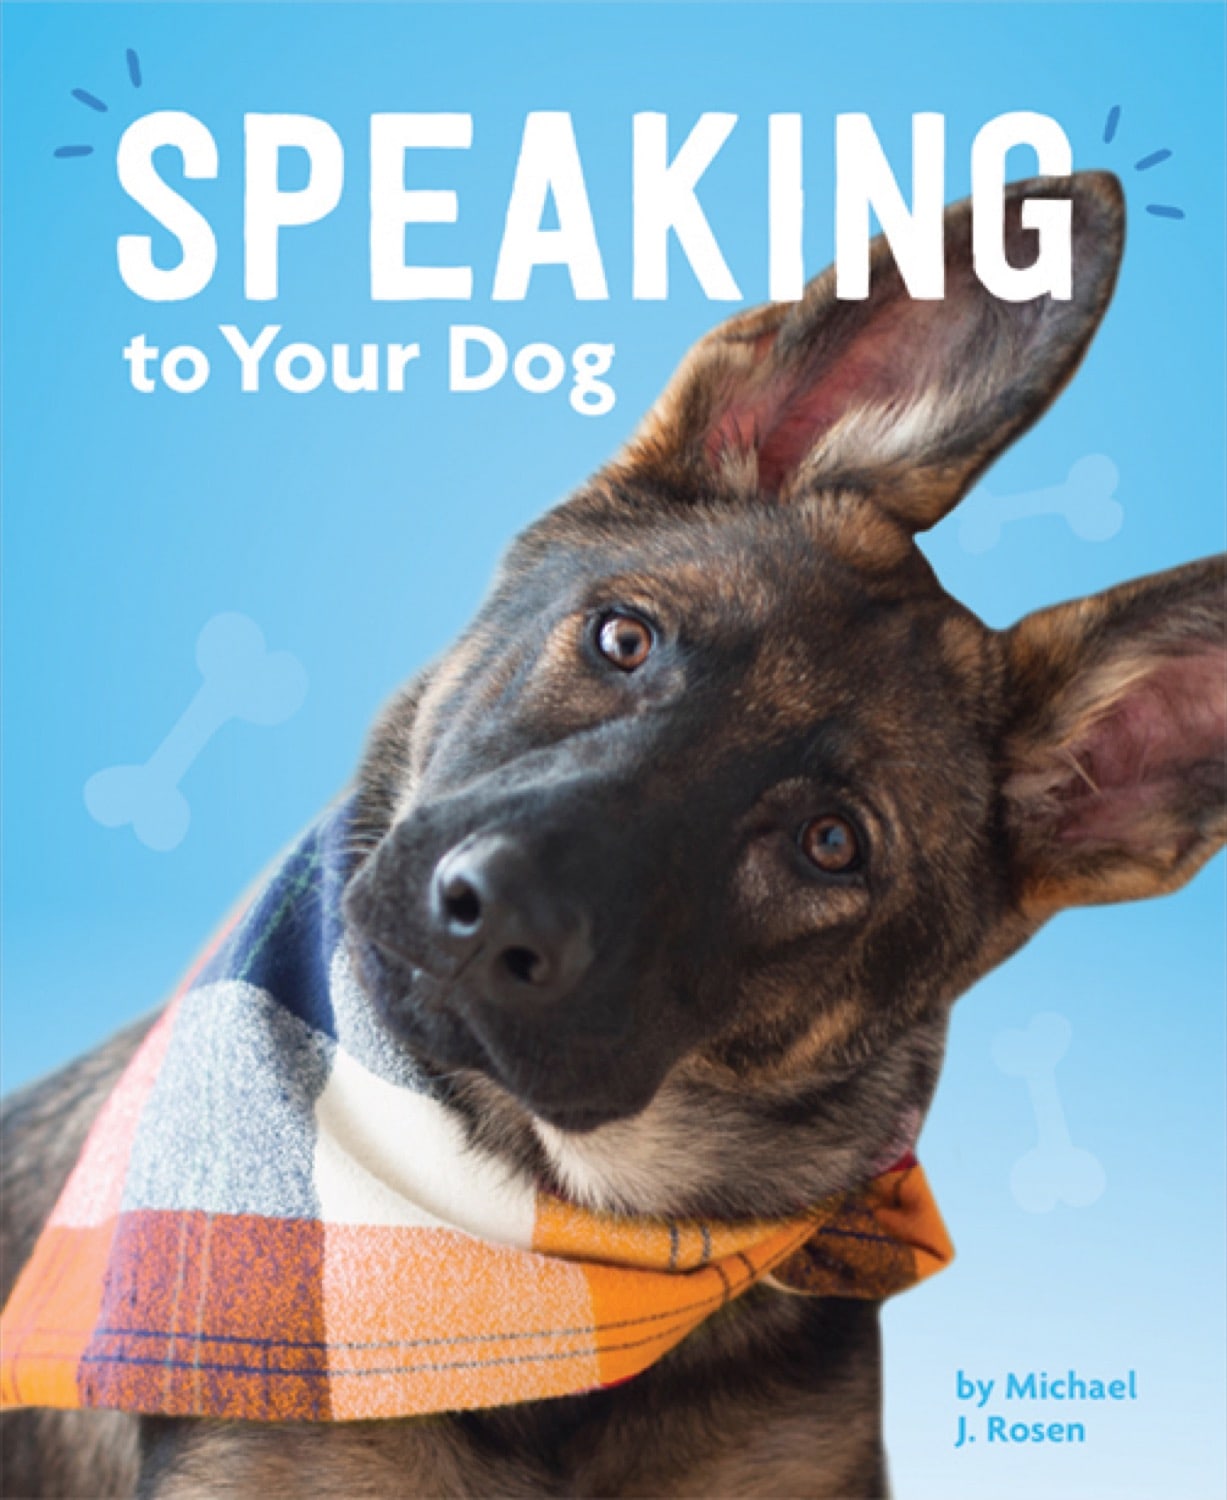 Dog's Life, A: Mit Ihrem Hund sprechen